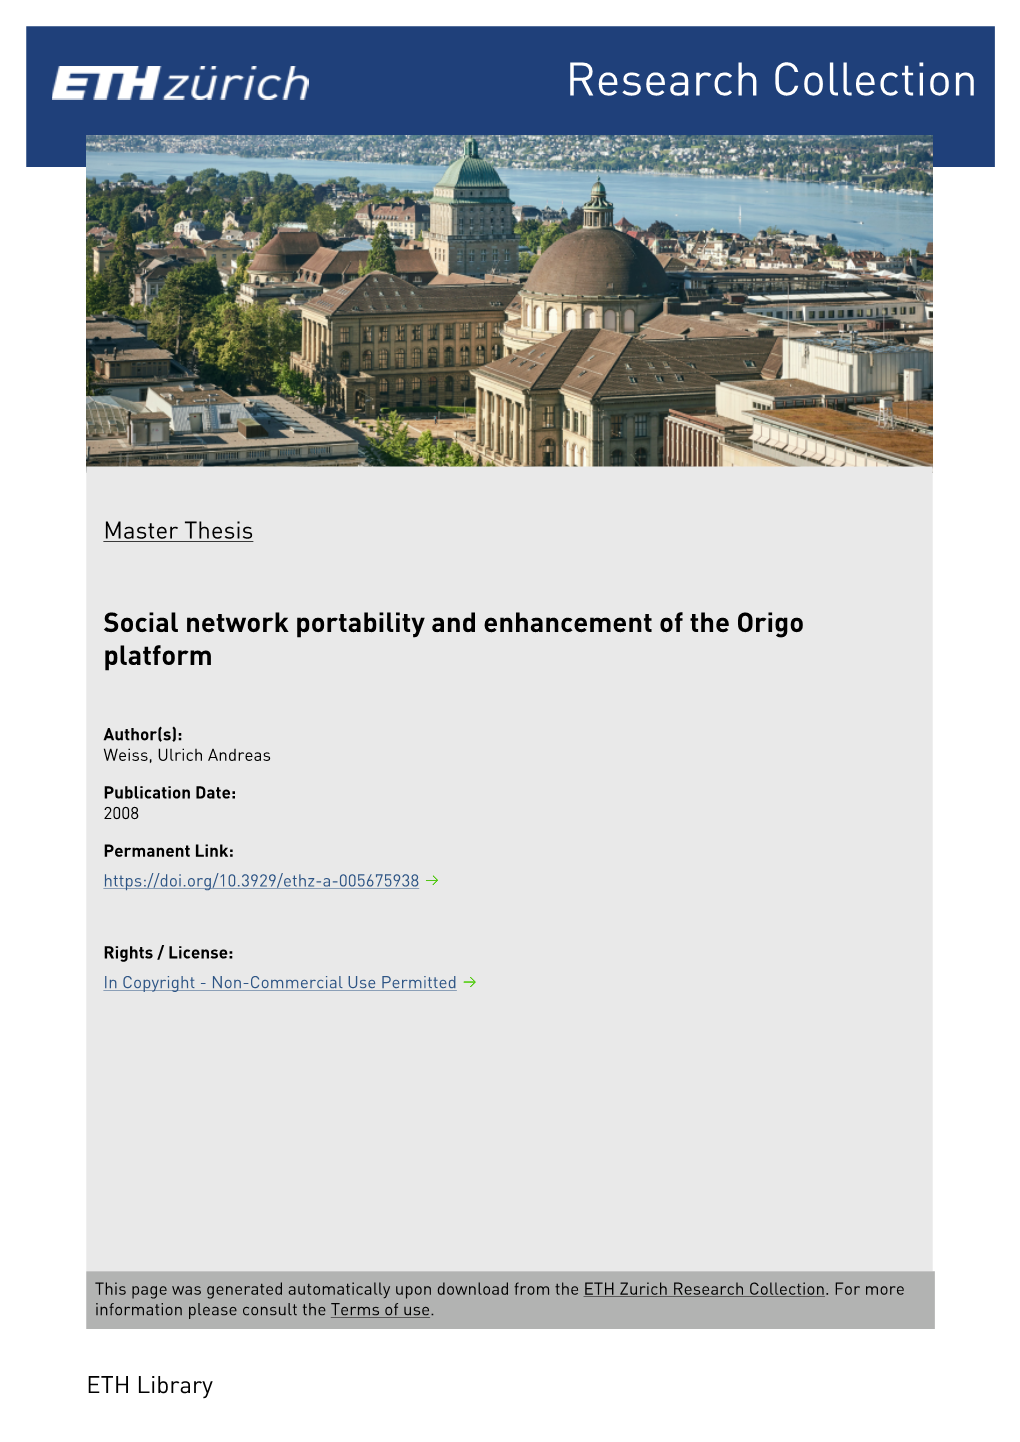 Social Network Portability and Enhancement of the Origo Platform